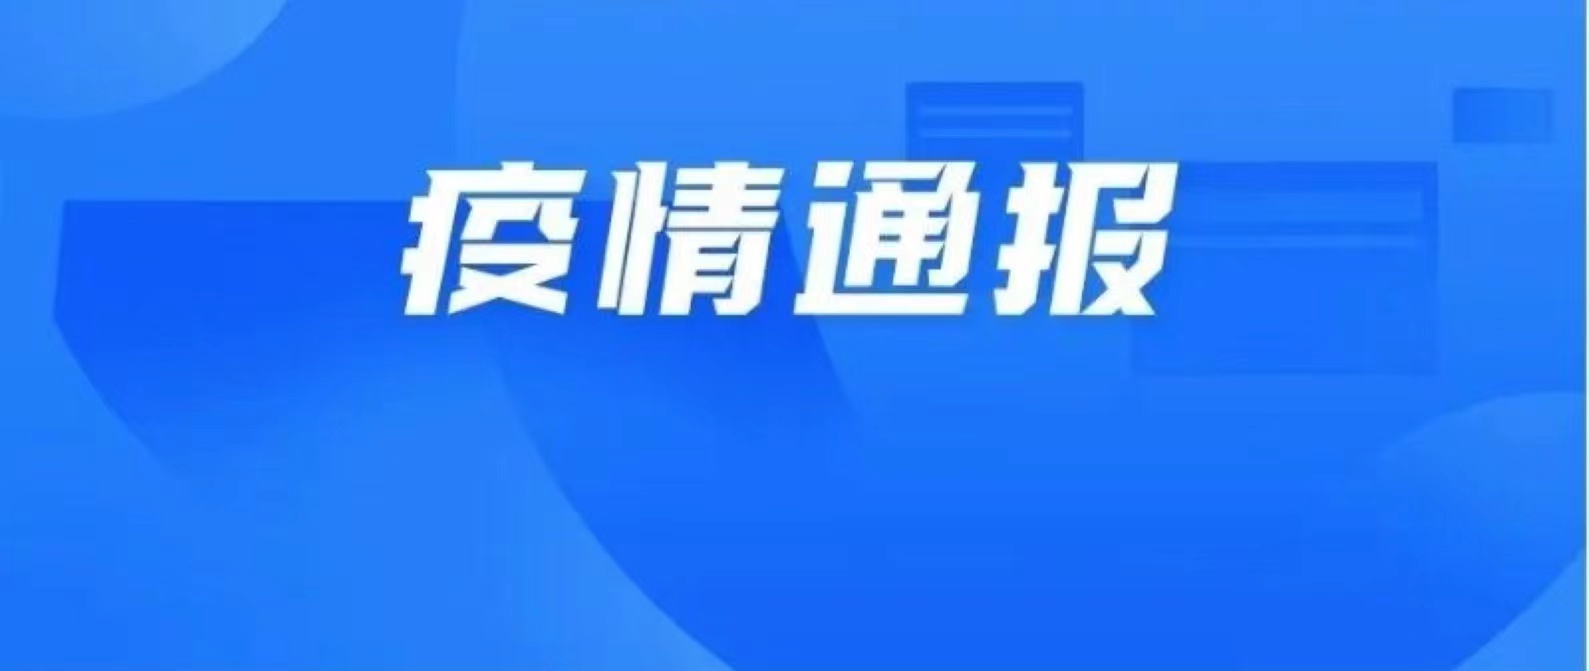 10月18日深圳新增11例确诊病例和9例无症状感染者